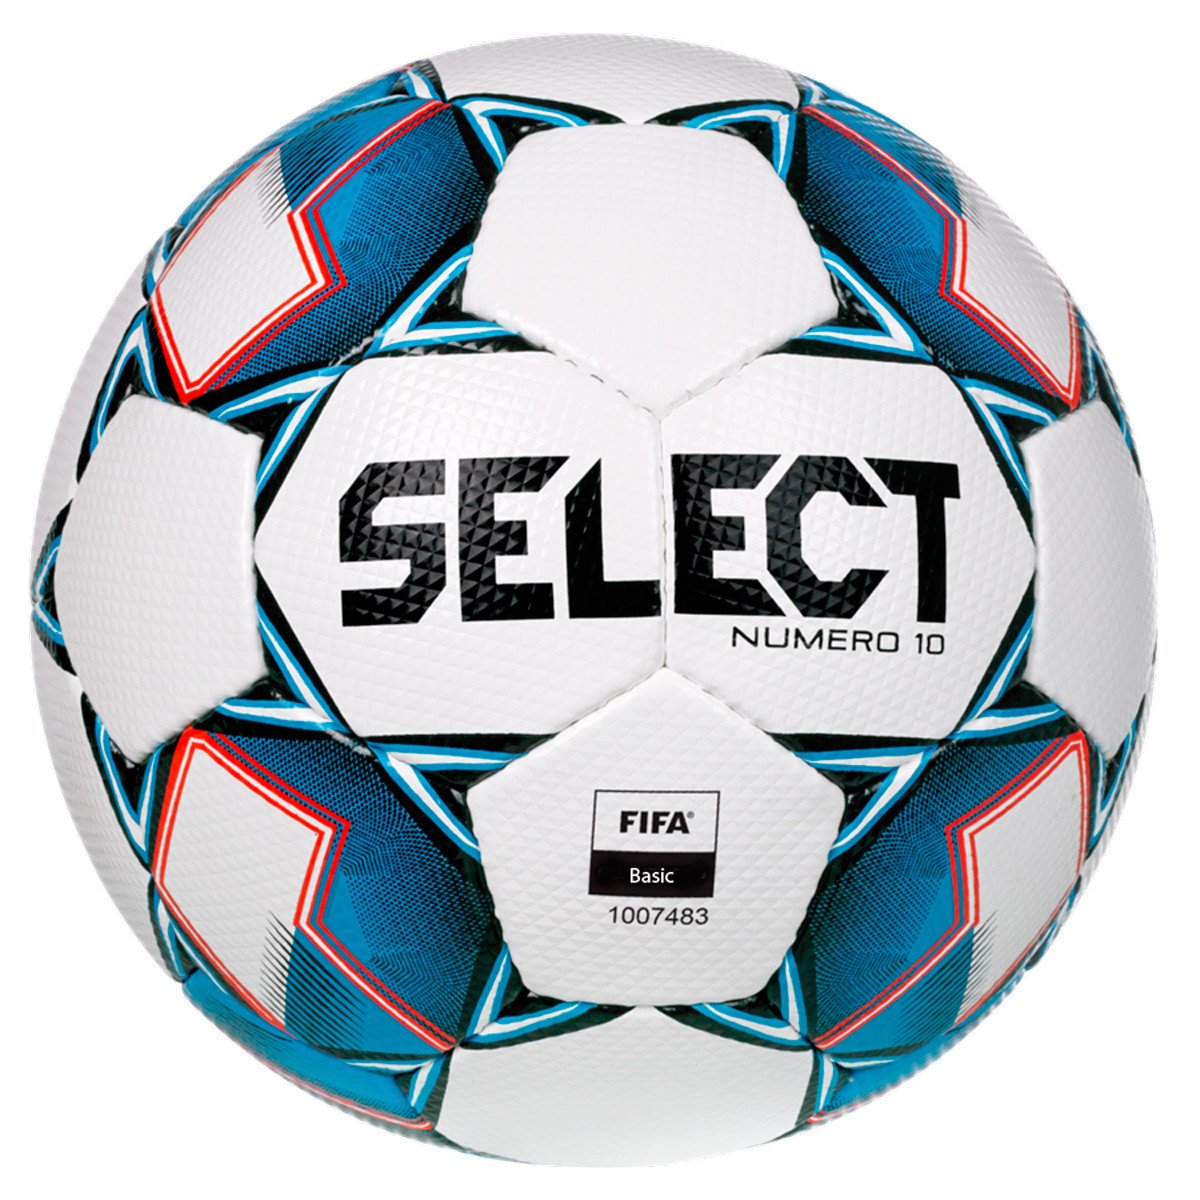 Select Numero 10 V22 Fodbold